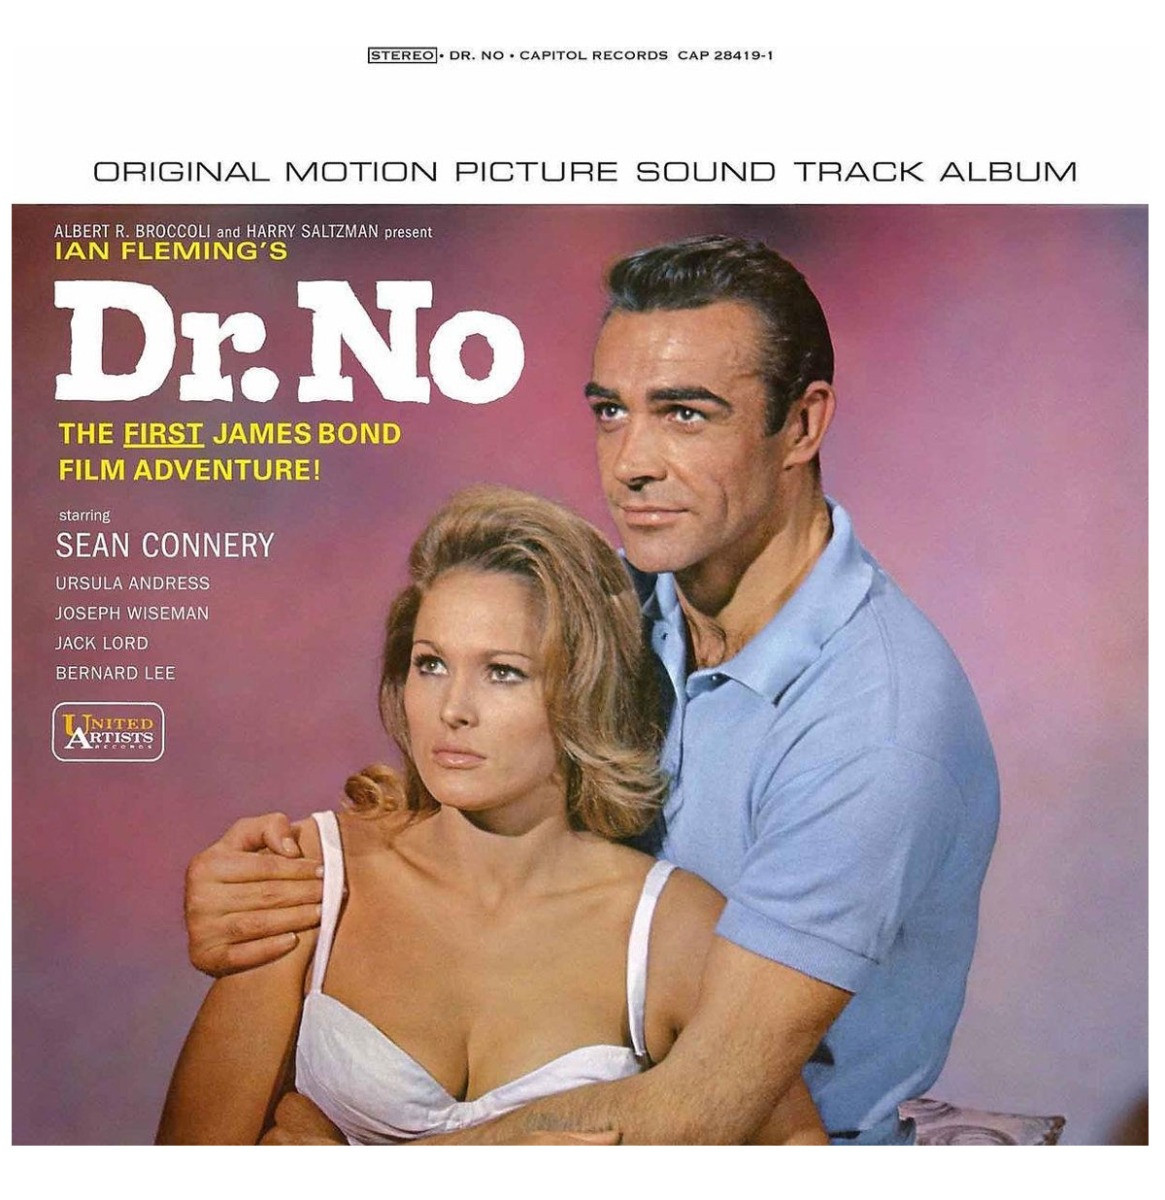 James Bond: The First Original Soundtrack - Dr No LP